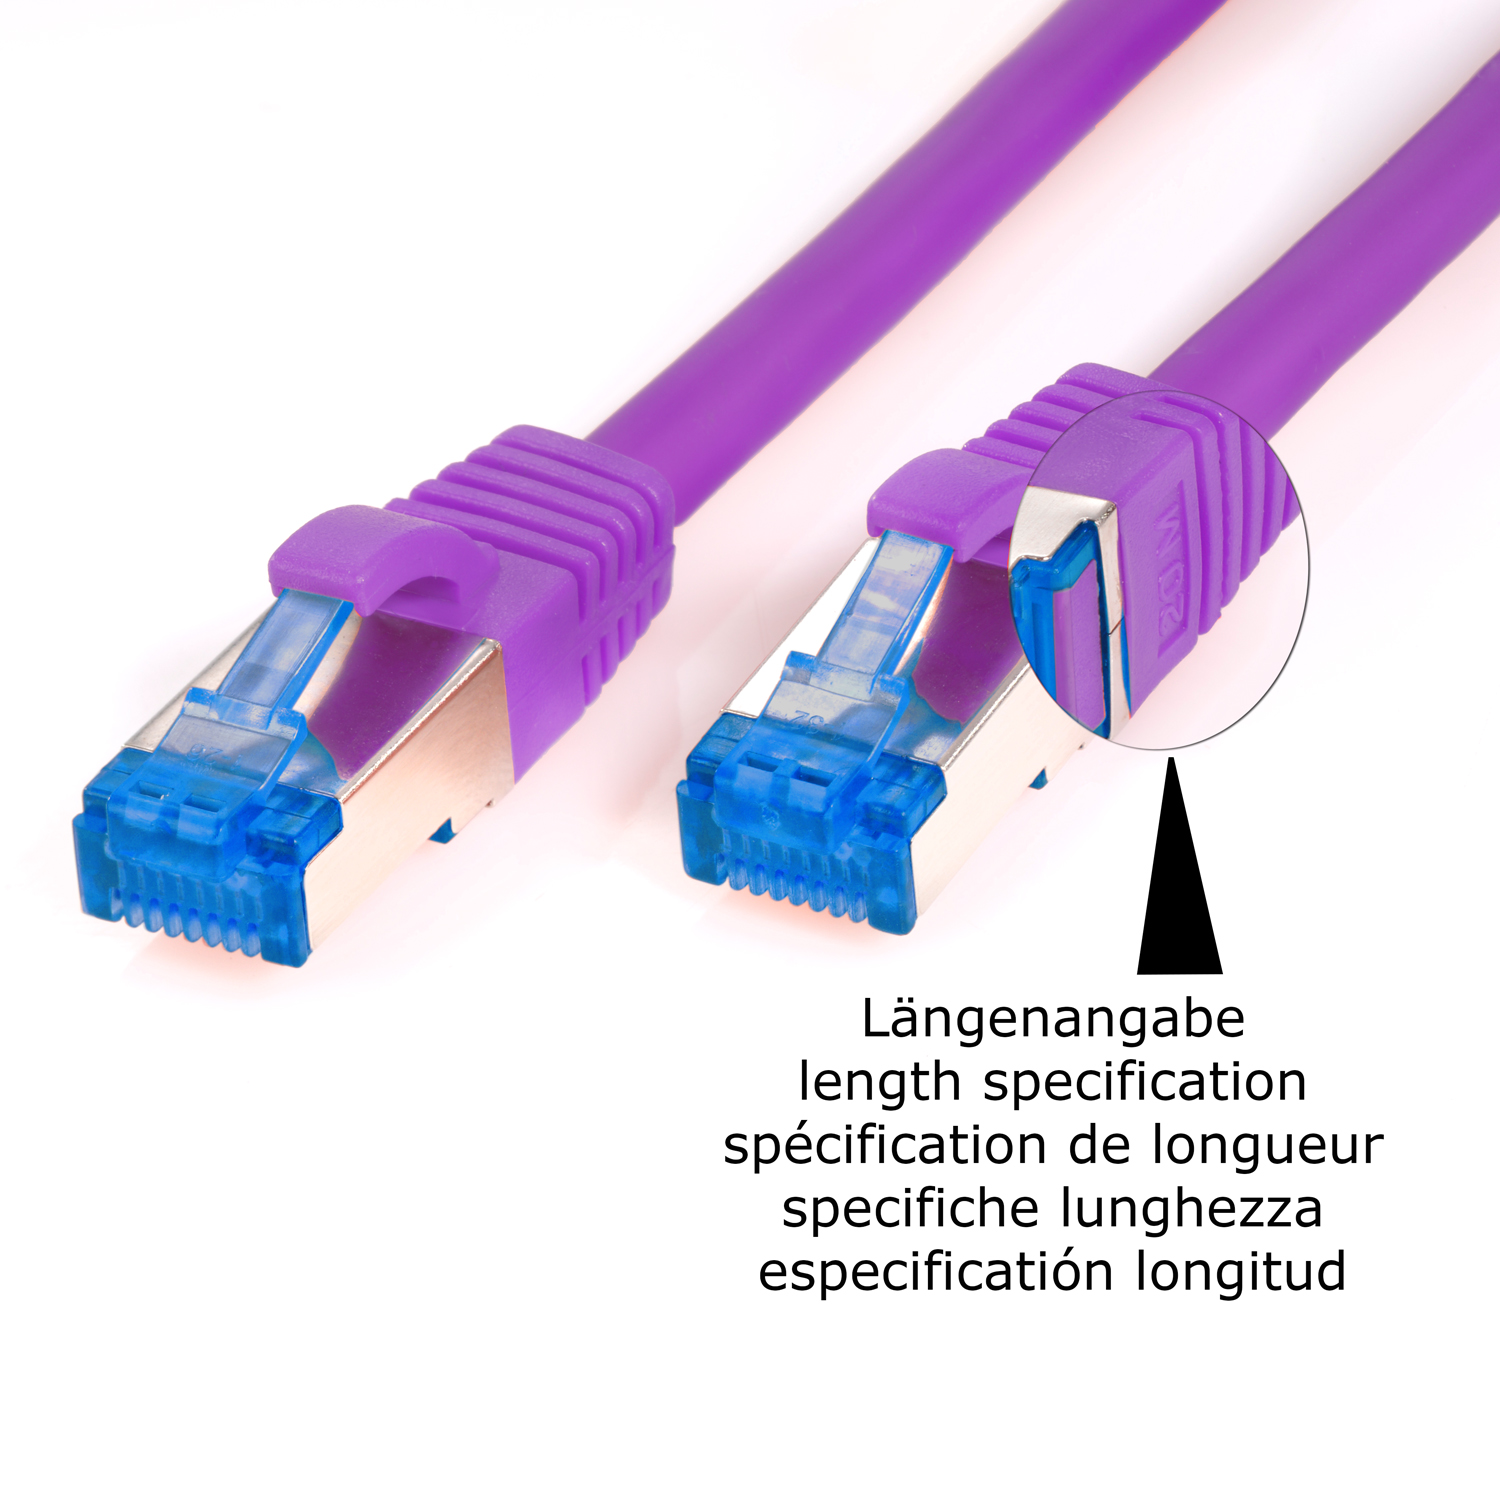 TPFNET 5er 1m Netzwerkkabel / 1 Pack violett, Netzwerkkabel, 10GBit, Patchkabel m S/FTP